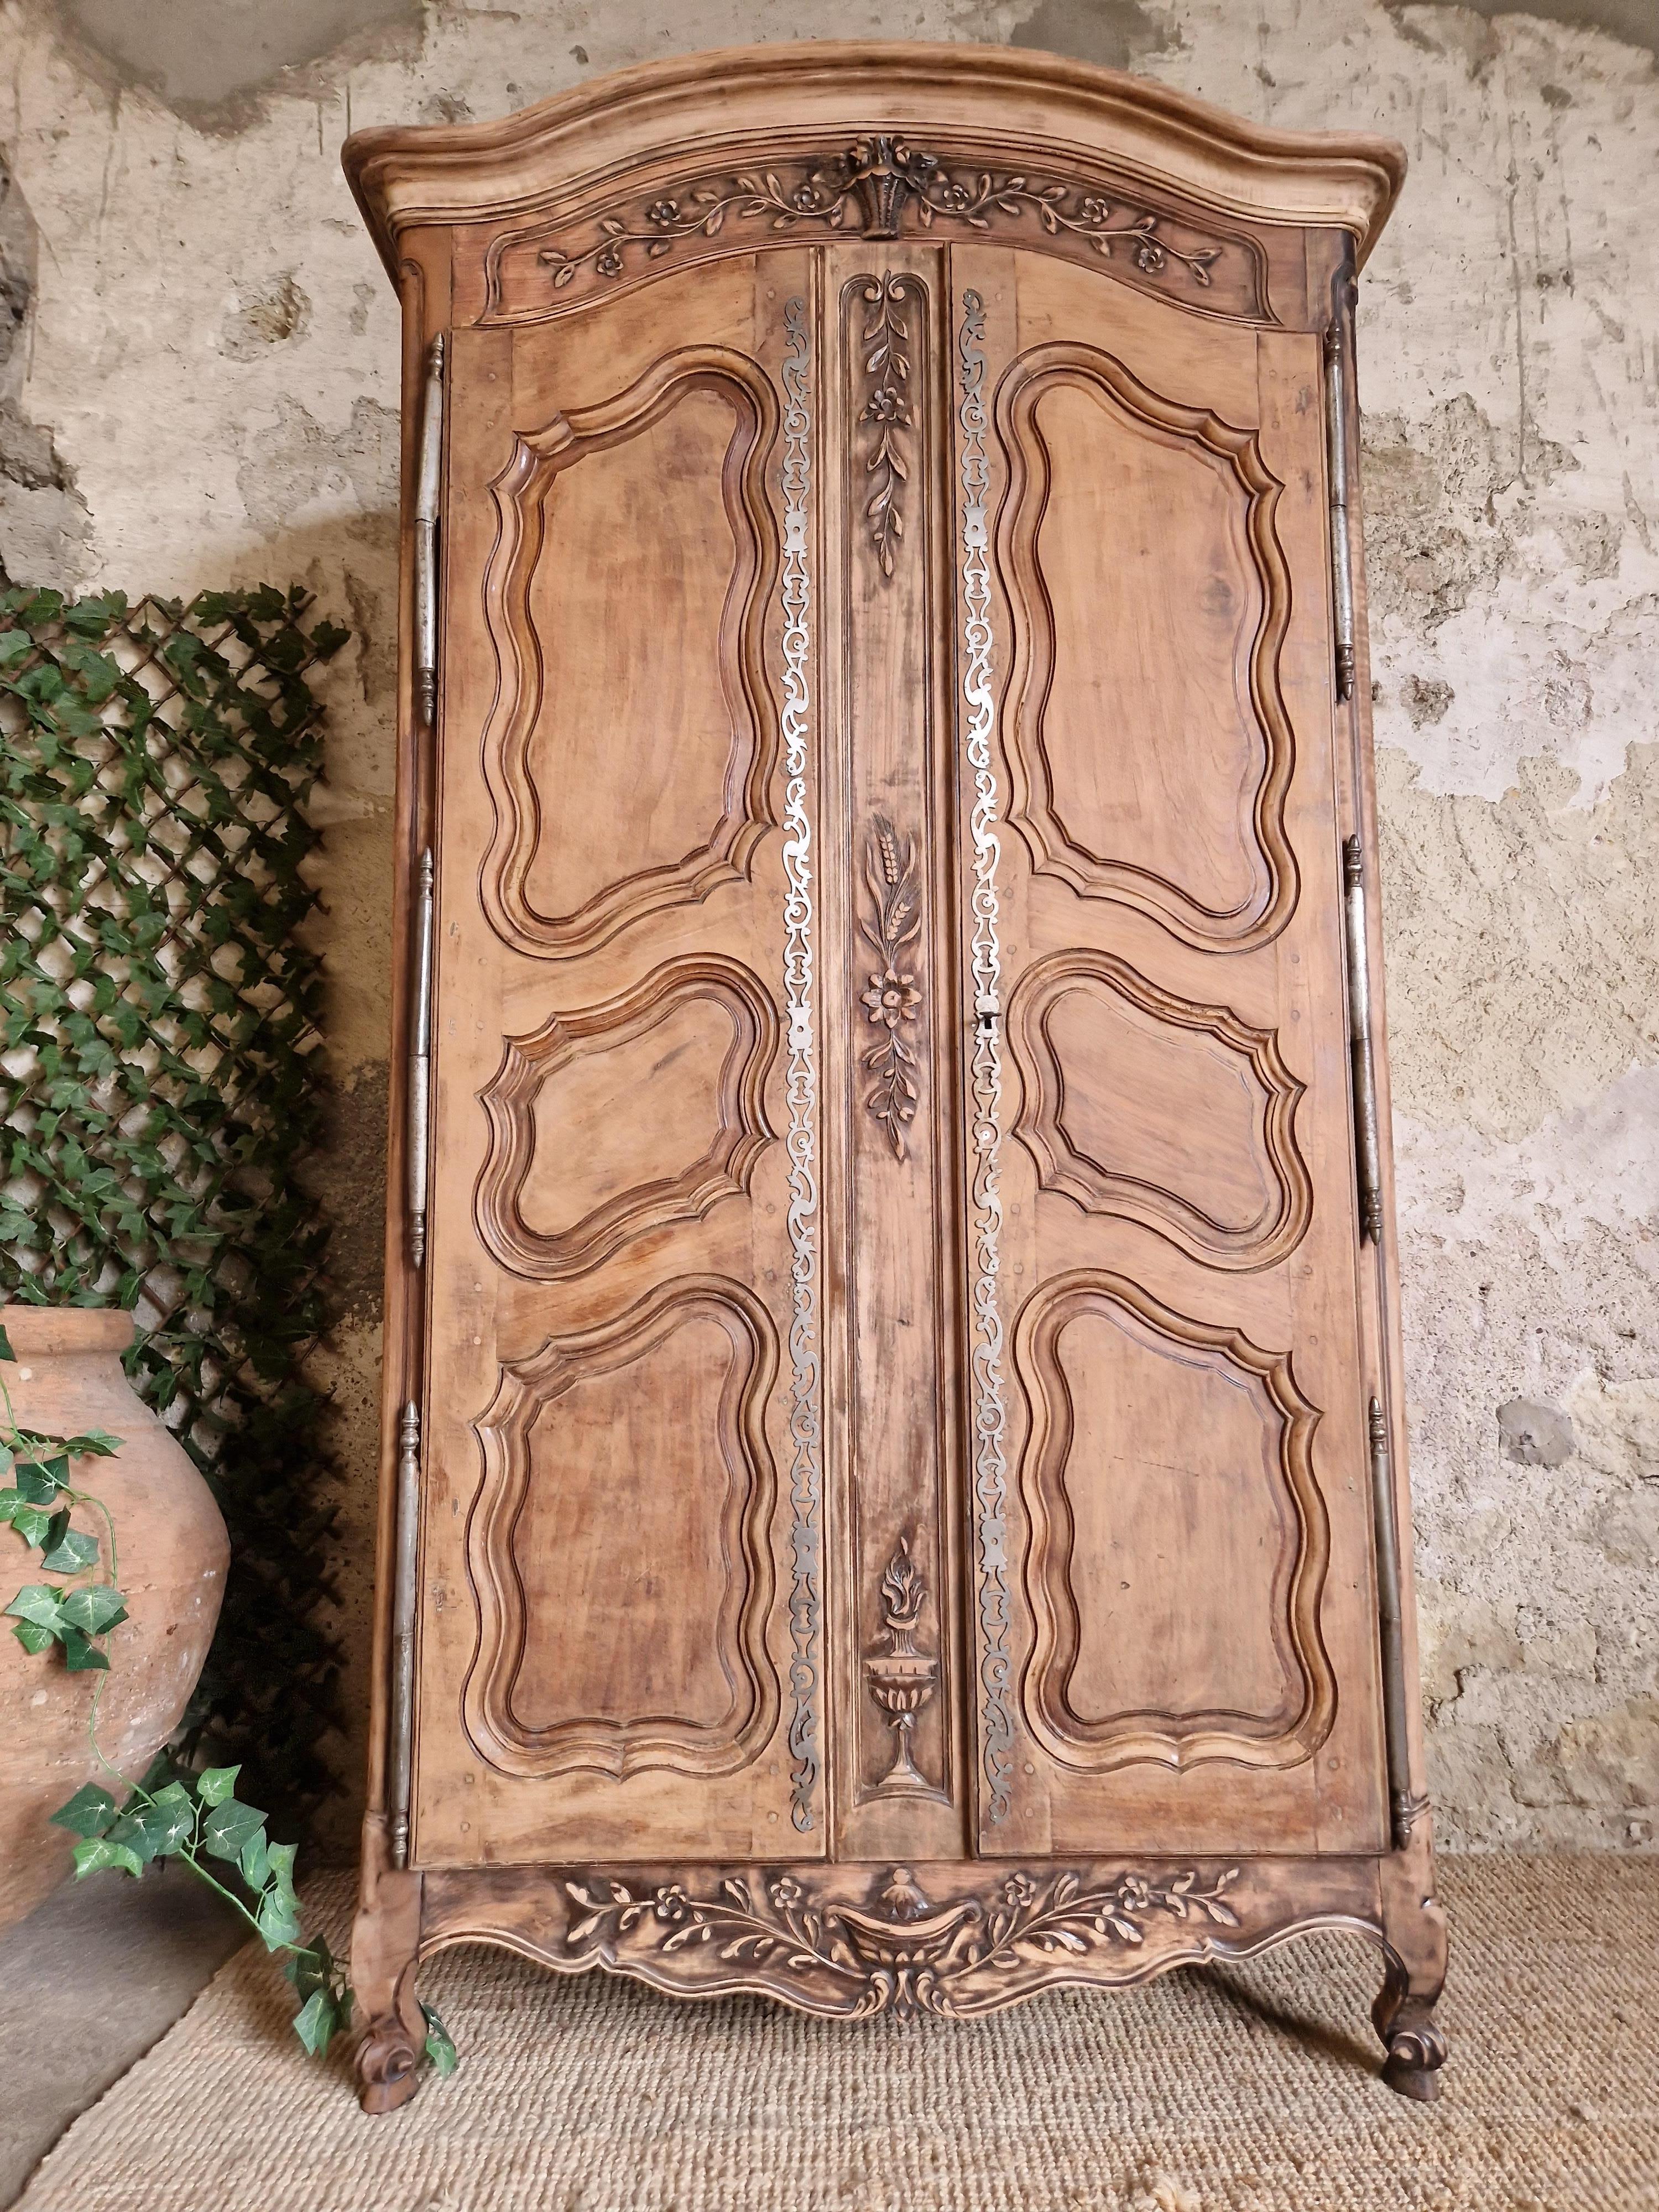 Cette magnifique armoire autoportante du XIXe siècle est fabriquée en bois massif. Cette pièce antique présente des sculptures, des plaques décoratives en ferronnerie et une serrure fonctionnelle. La finition en bois massif a été décapée pour lui